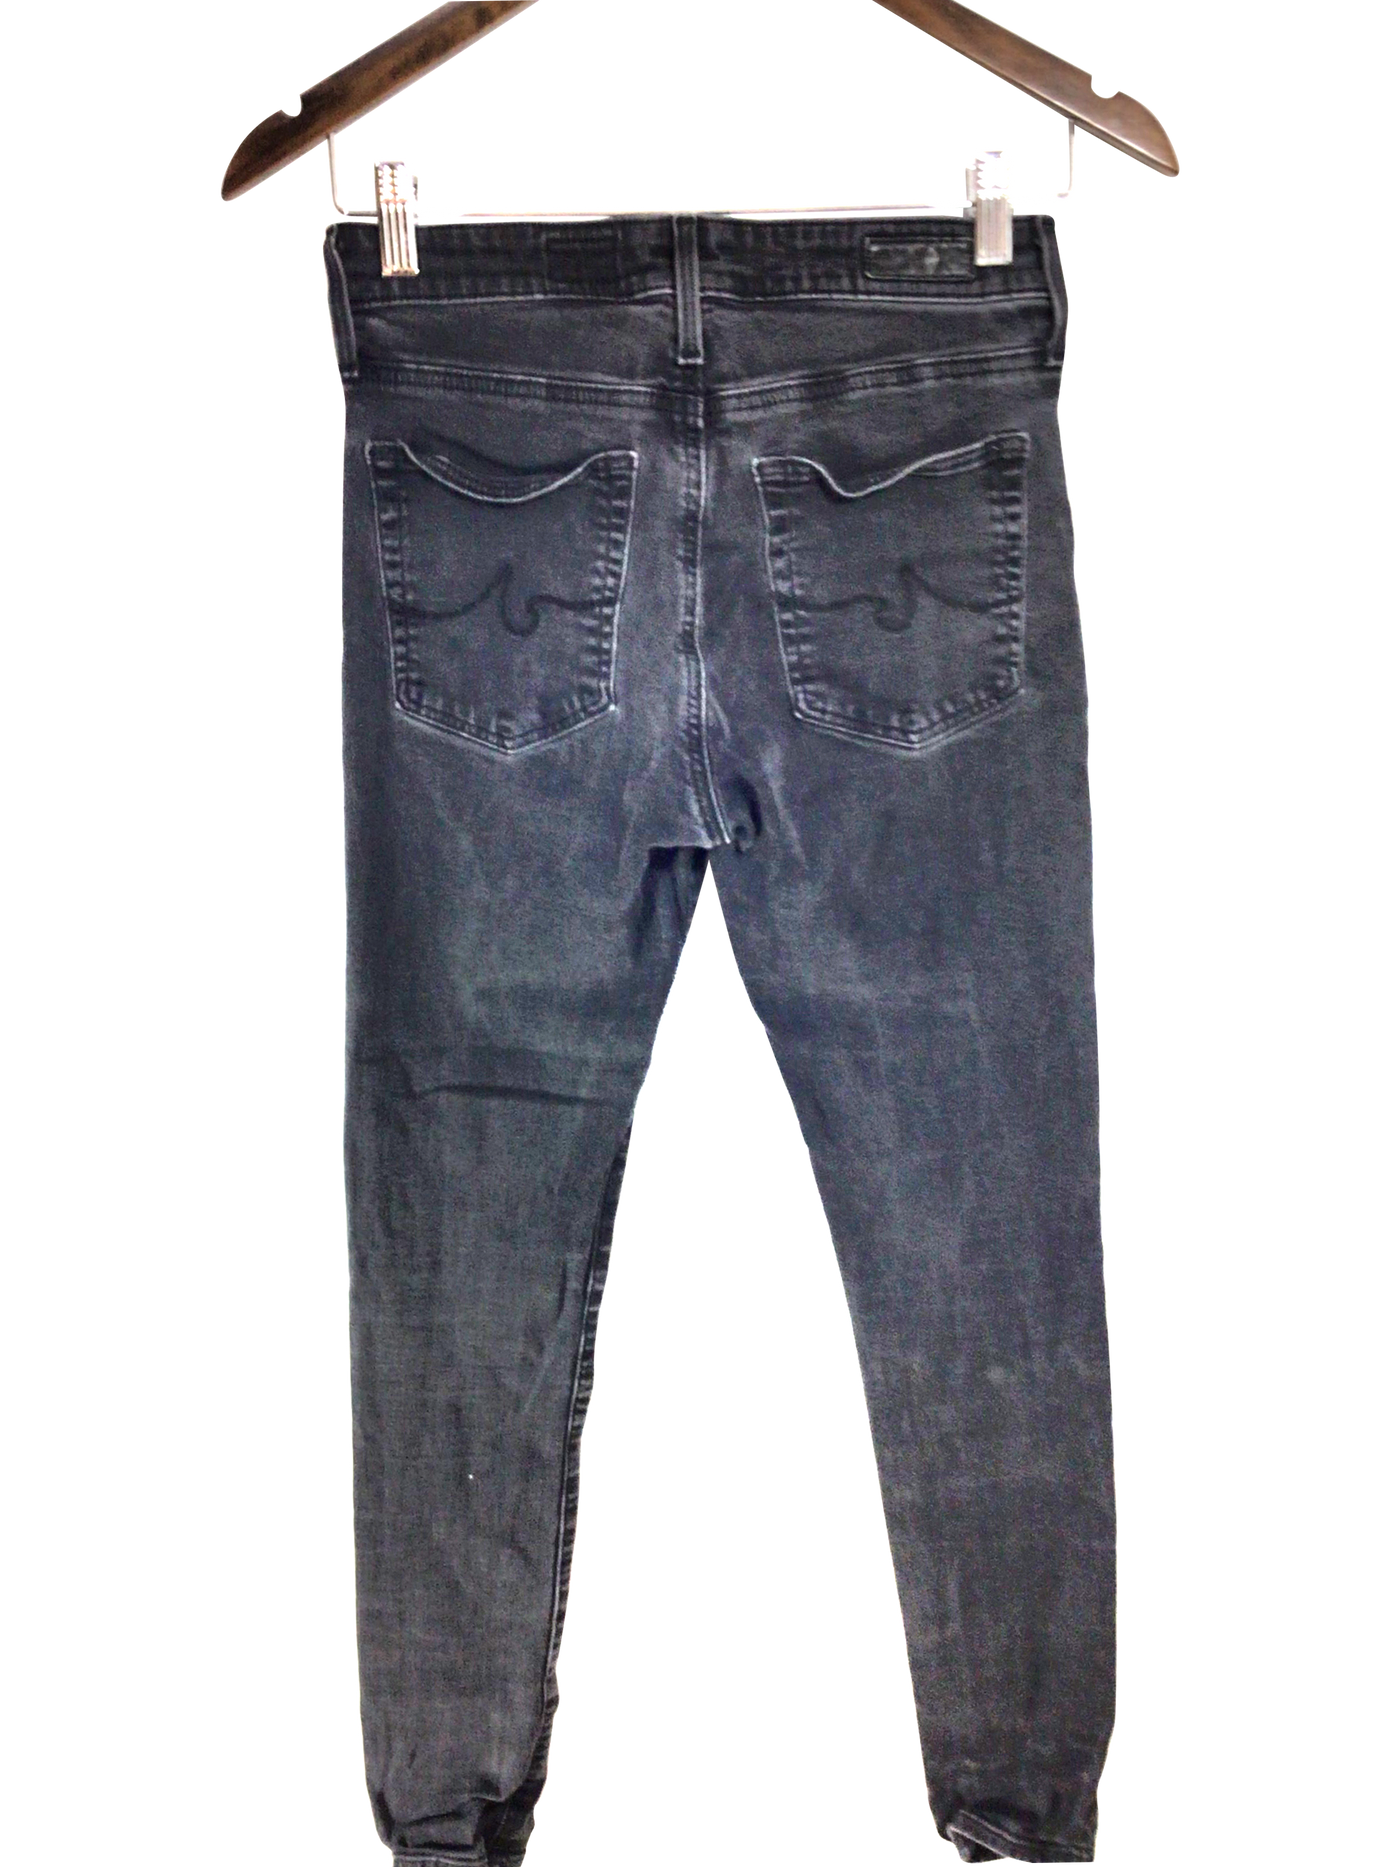 ADRIANO GOLDSCHMIED Women Straight-Legged Jeans Regular fit in Gray - Size 27 | 12.09 $ KOOP